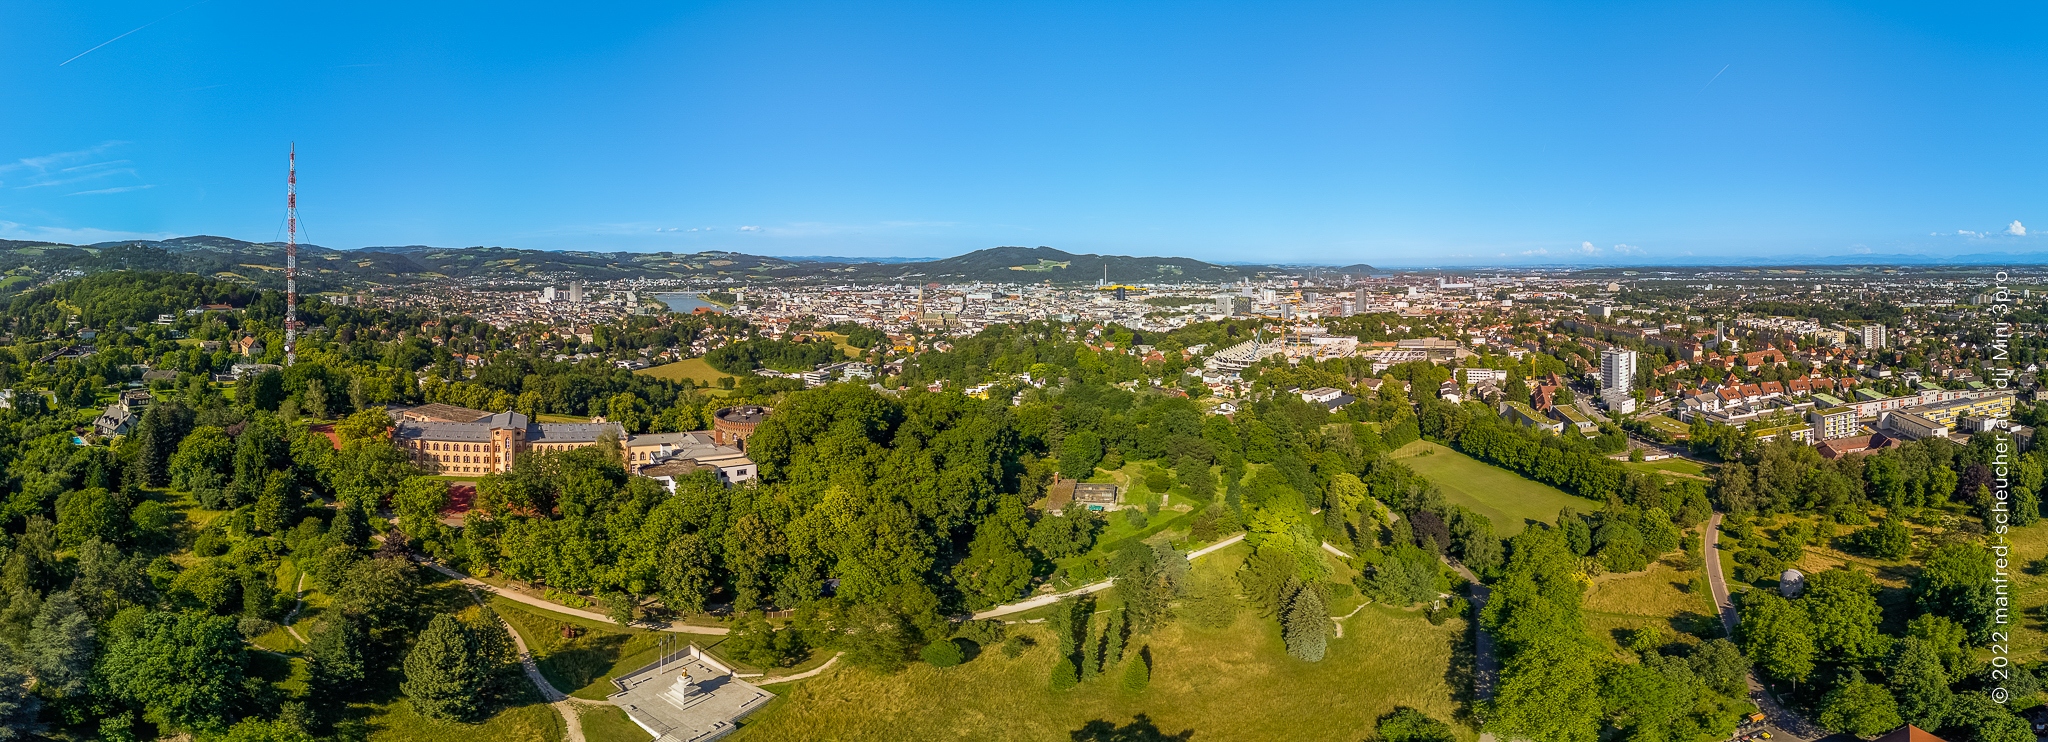 Linz-Teilpanorama aus der Luft aufgenommen